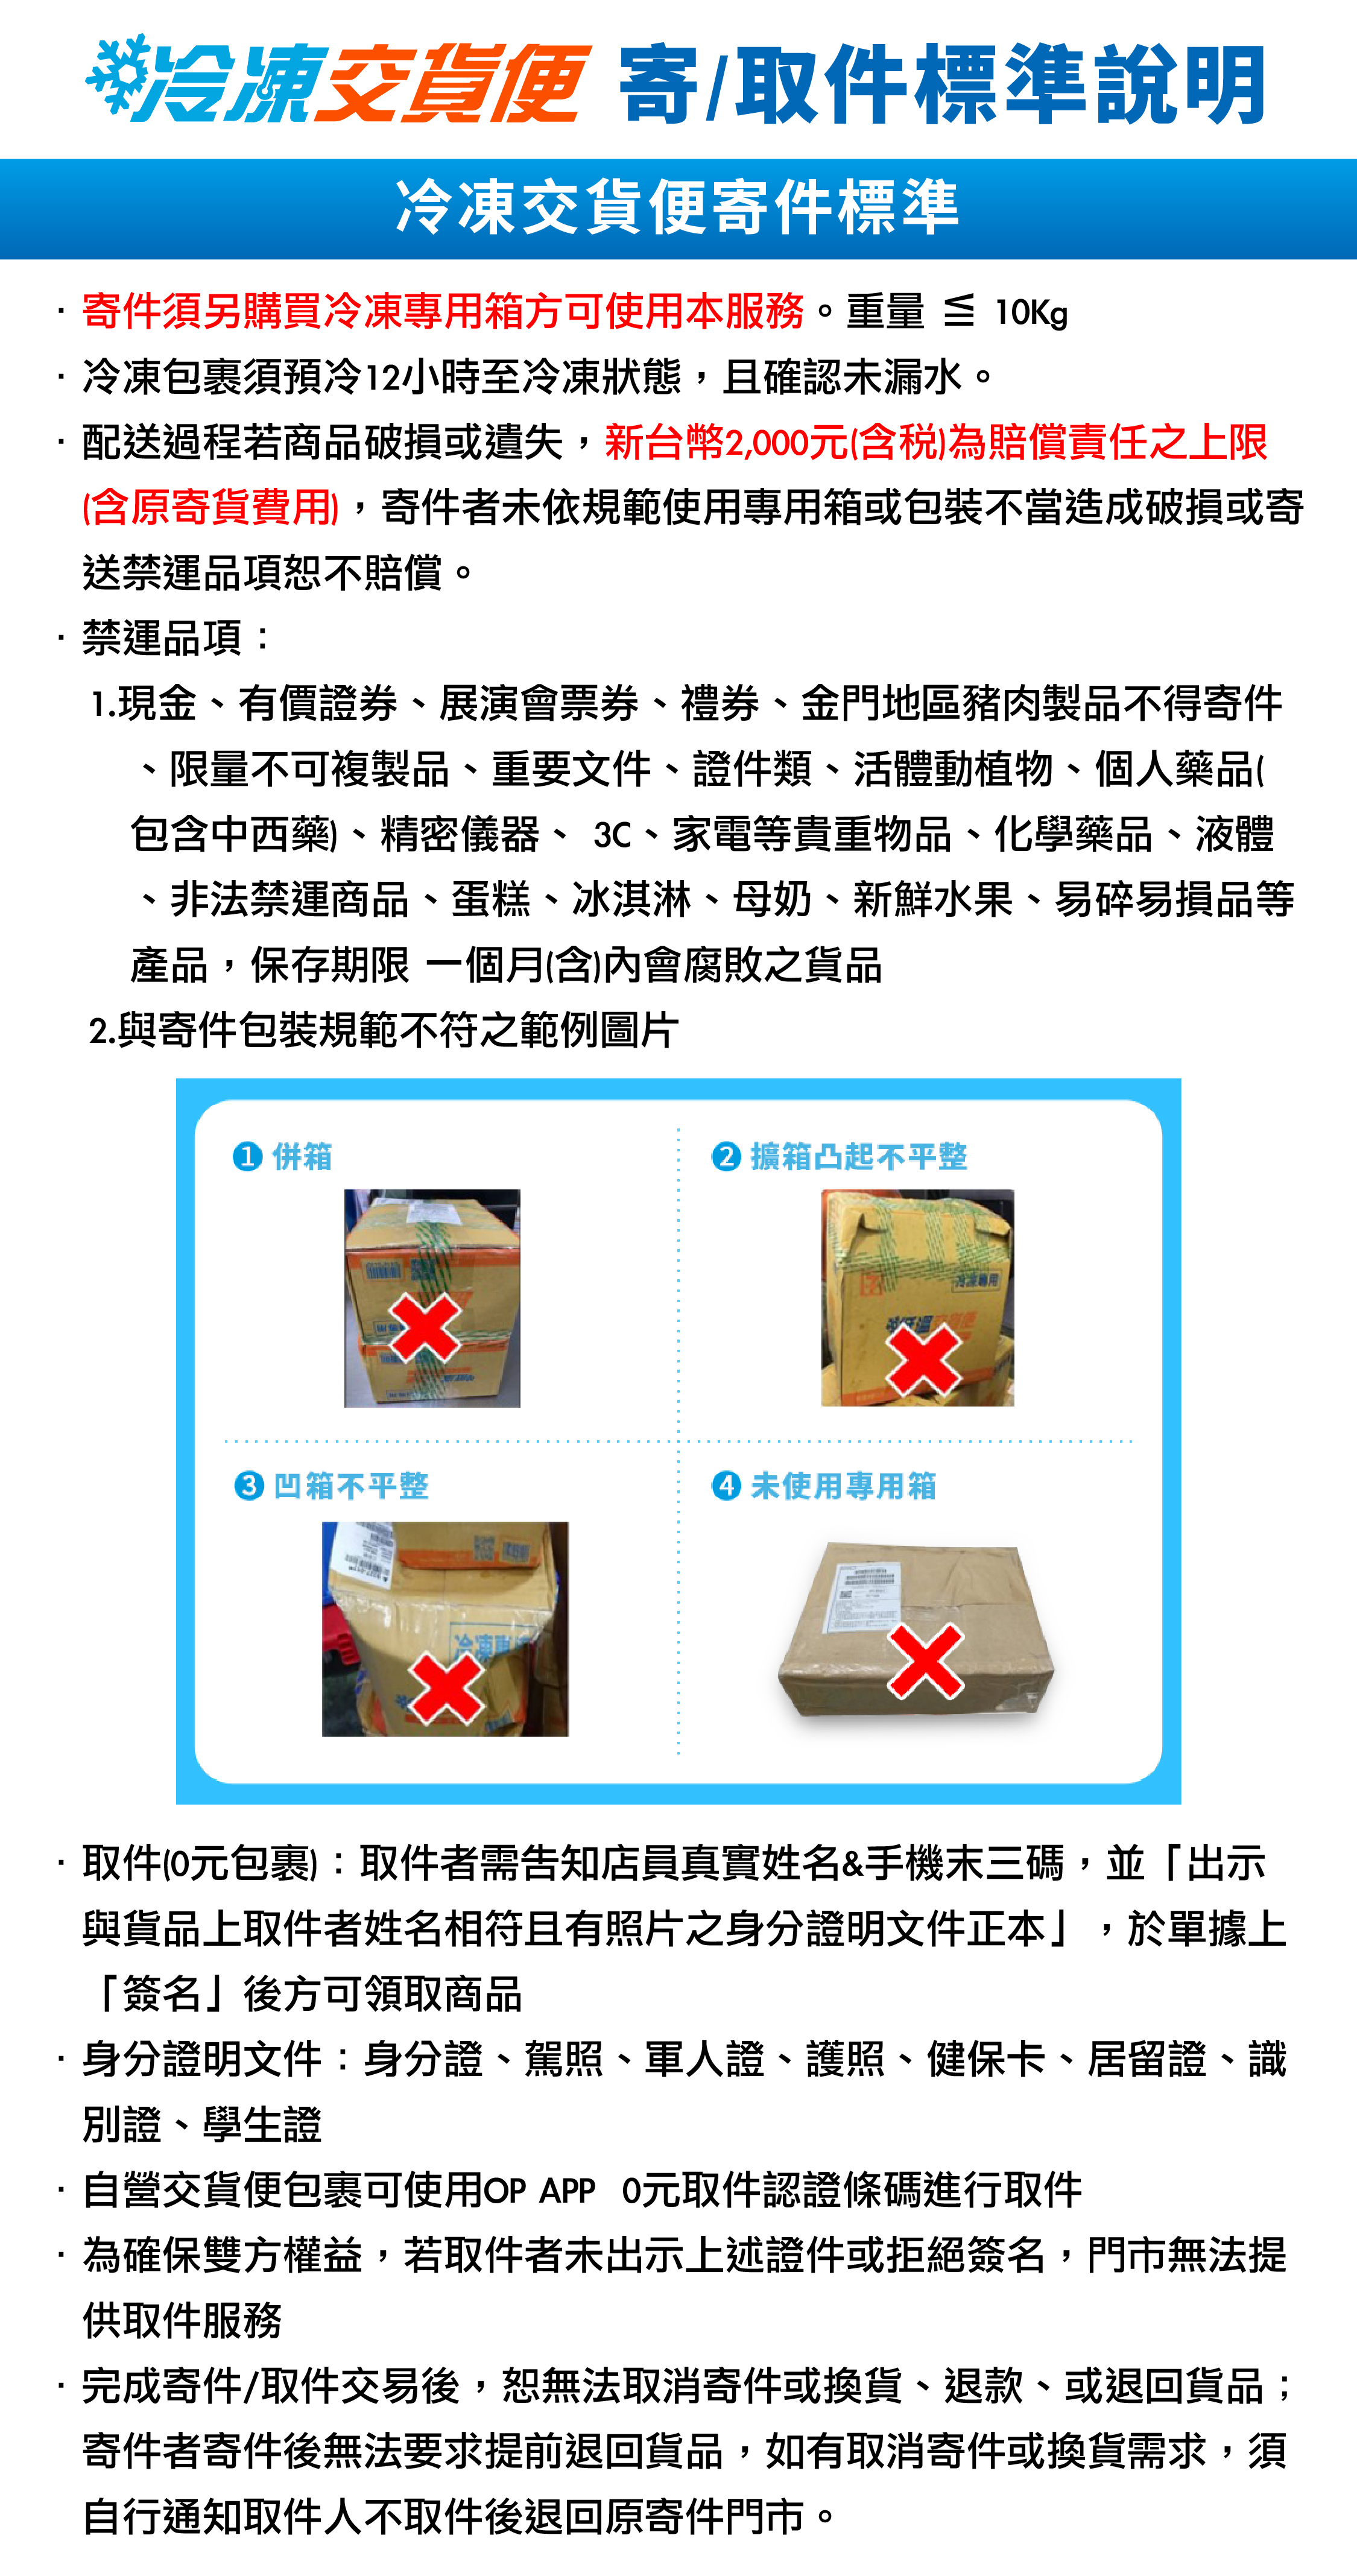 冷凍寄/取件標準說明-中文版